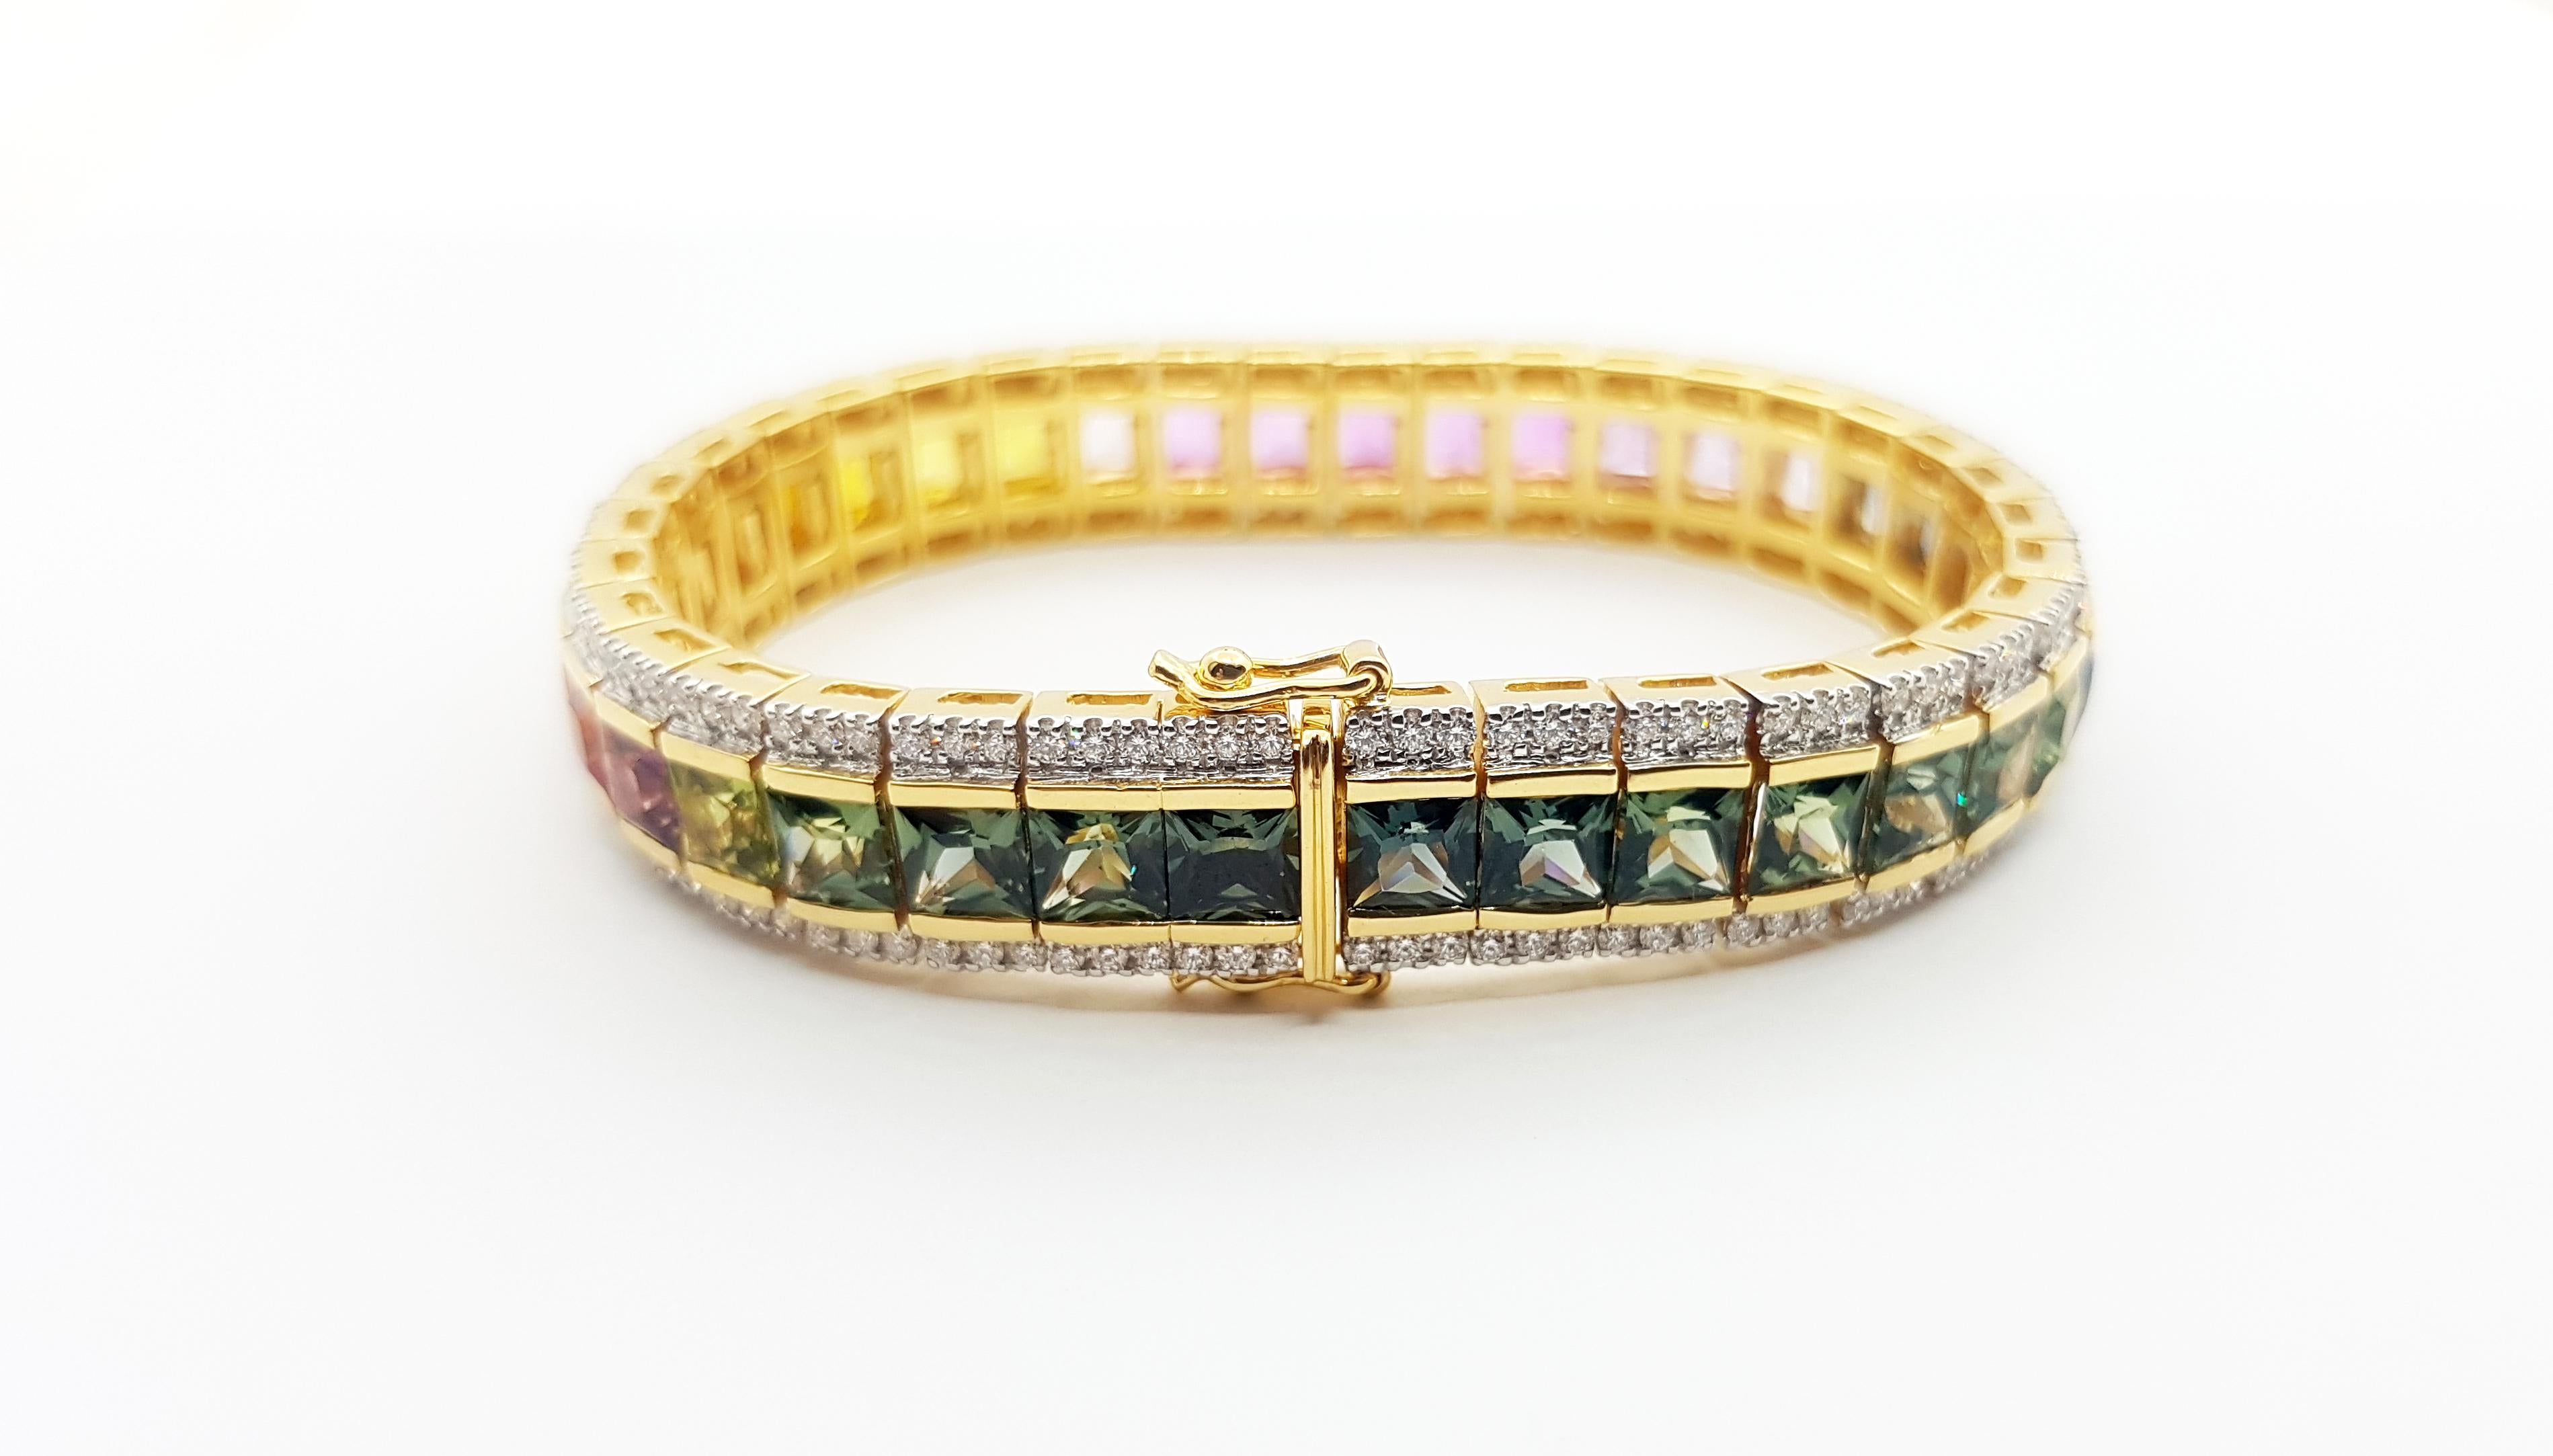 Regenbogenfarbe Saphir 26,34 Karat mit Diamant 2,65 Karat Armband in 18K Goldfassung

Breite:  1.1 cm 
Länge: 18,0 cm
Gesamtgewicht: 61,77 Gramm

